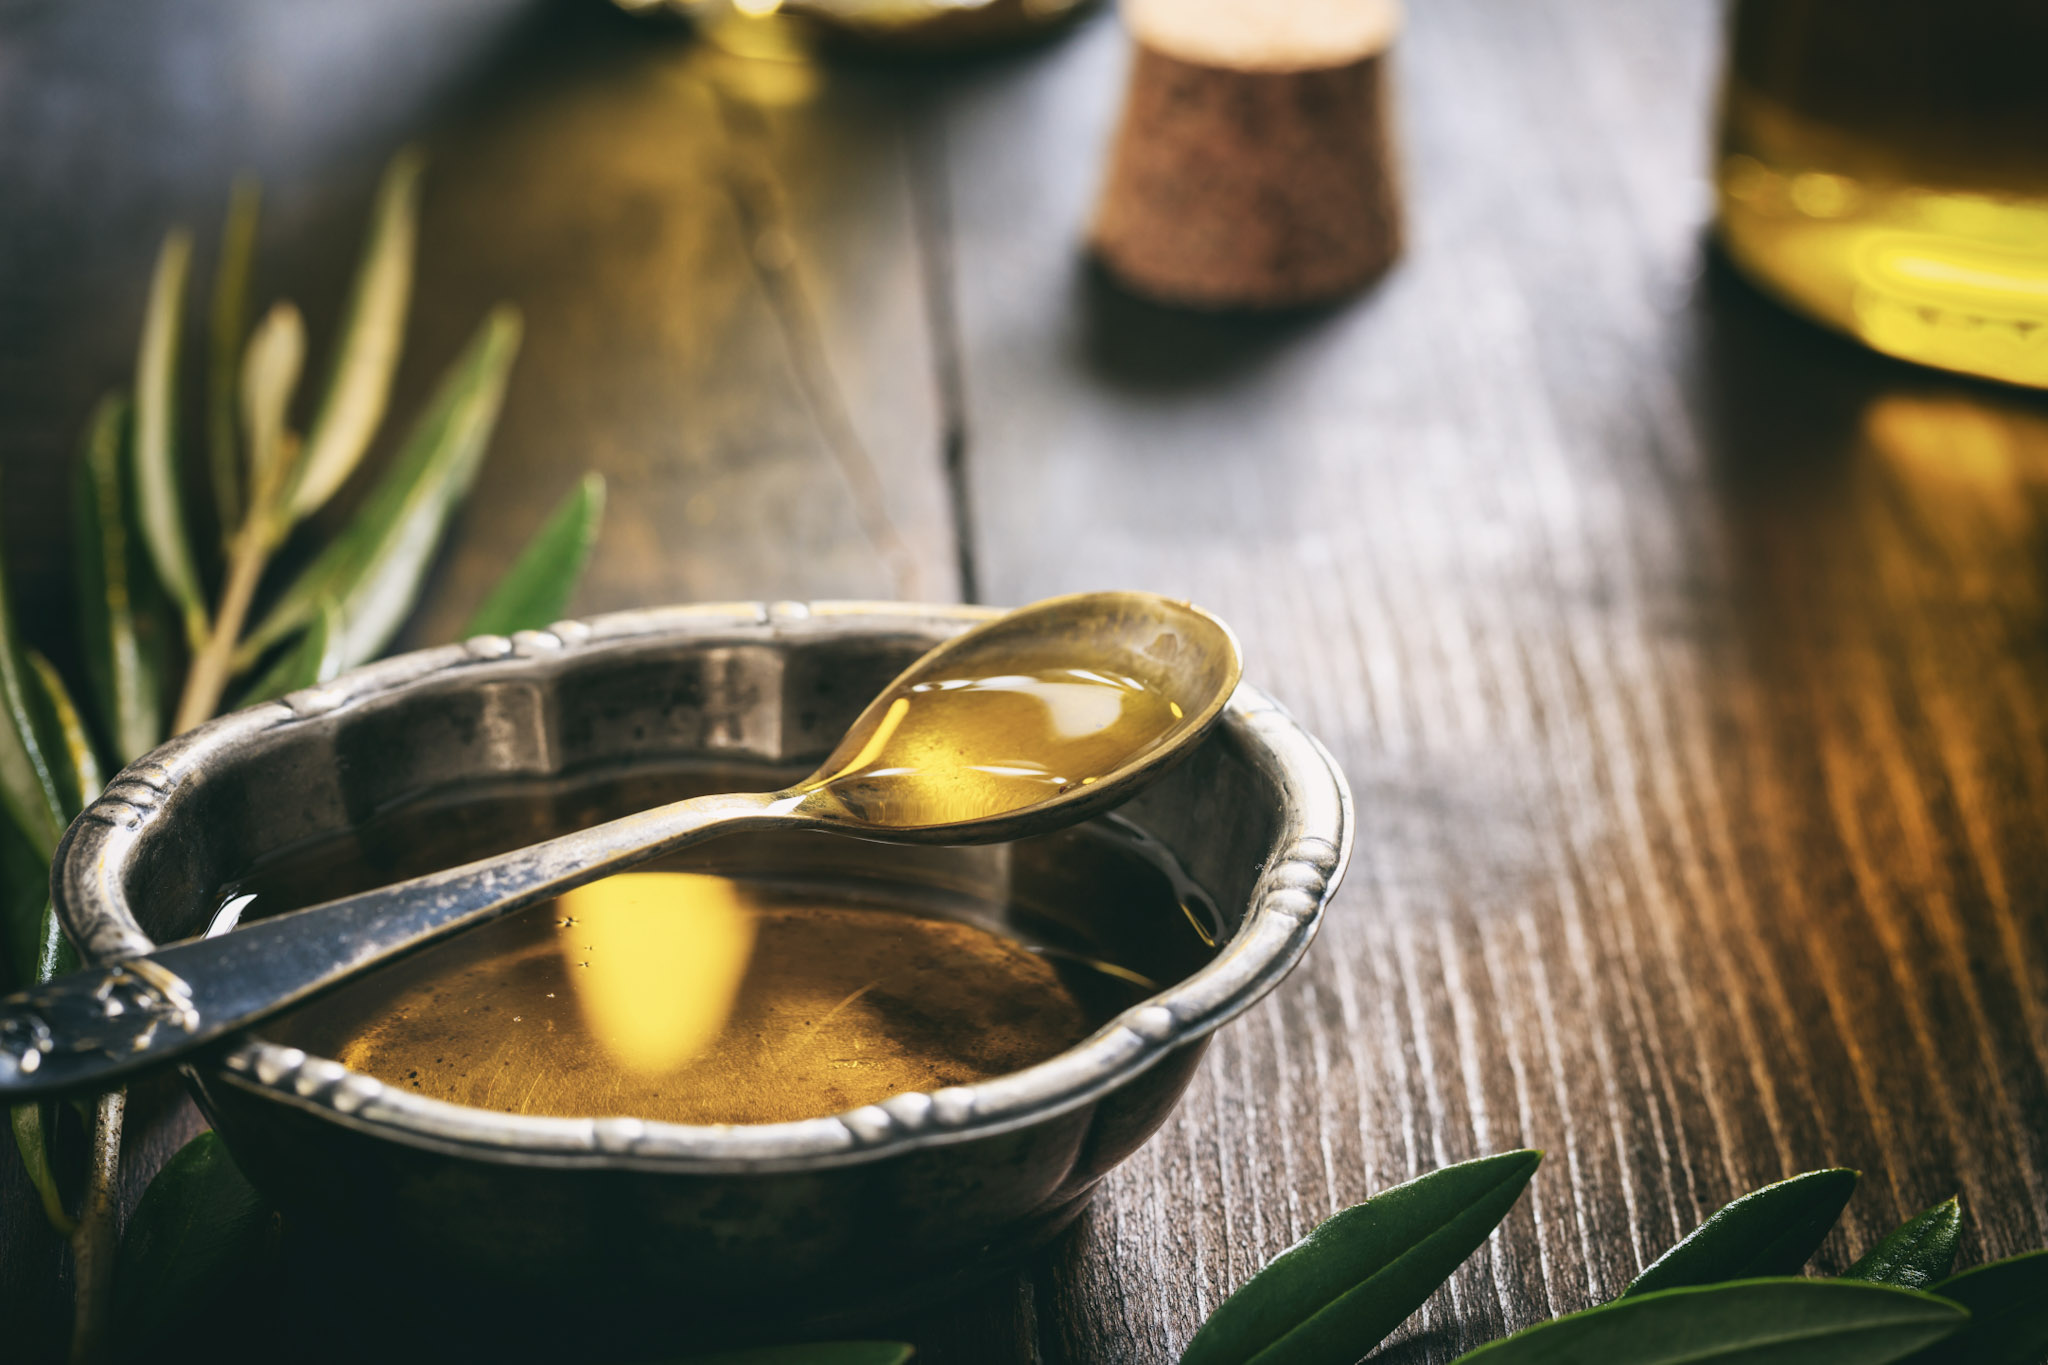 Razlika između djevičanskog i ekstra djevičanskog maslinovog ulja